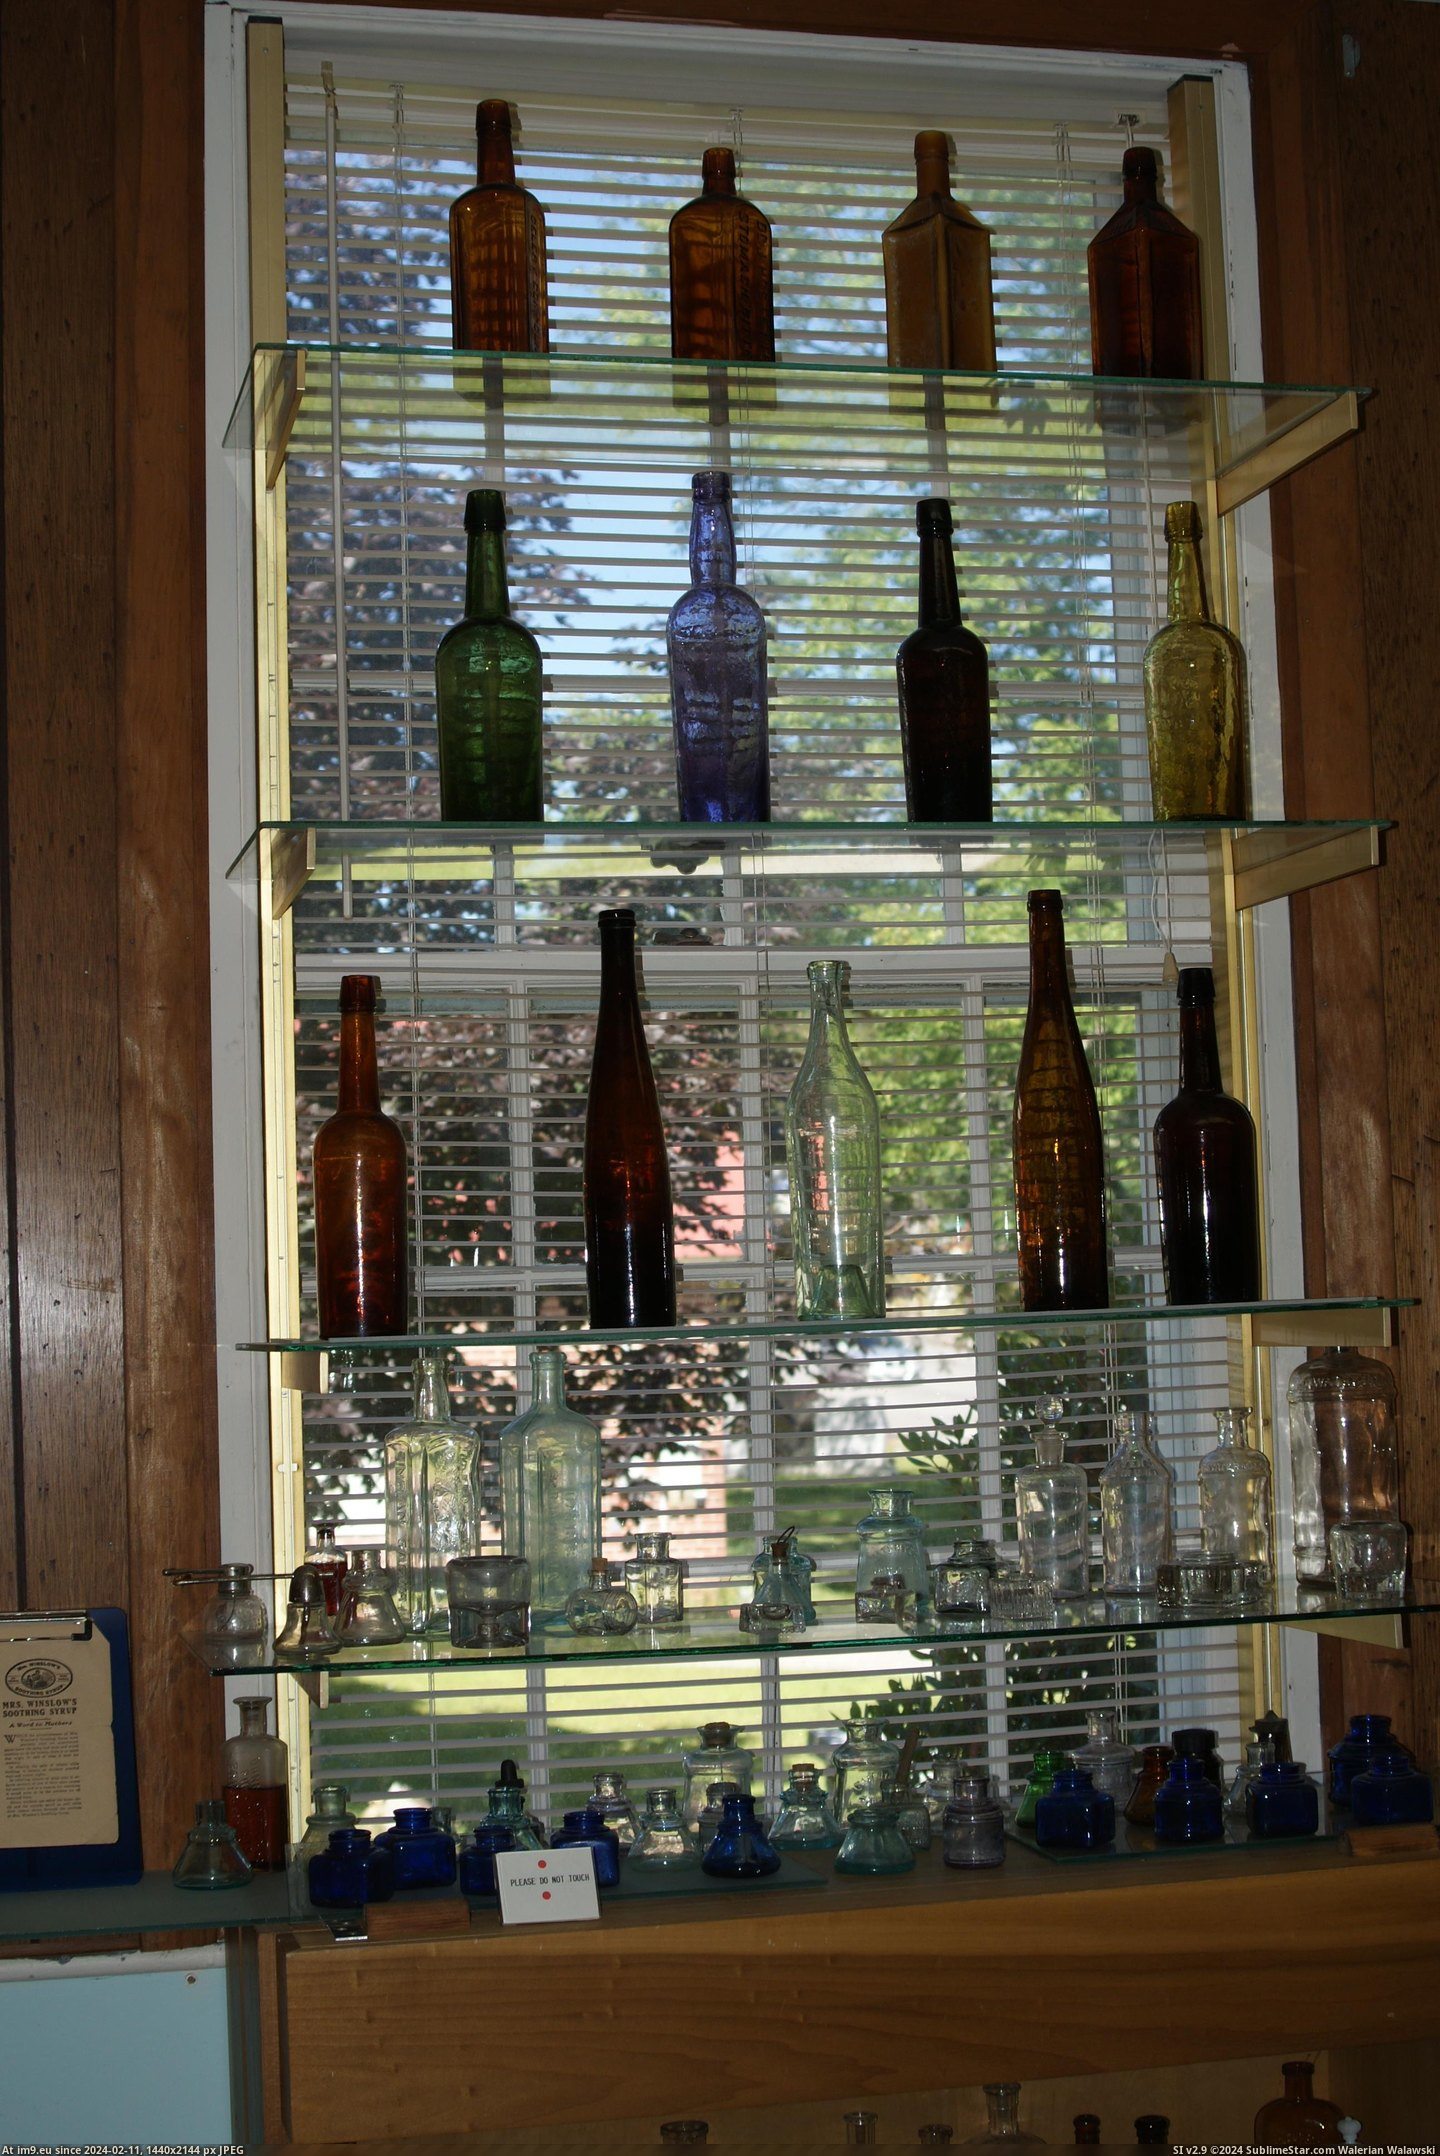 #Museum #Maine #Naples #Bottle MAINE BOTTLE MUSEUM NAPLES (10) Pic. (Bild von album MAINE BOTTLE MUSEUM))